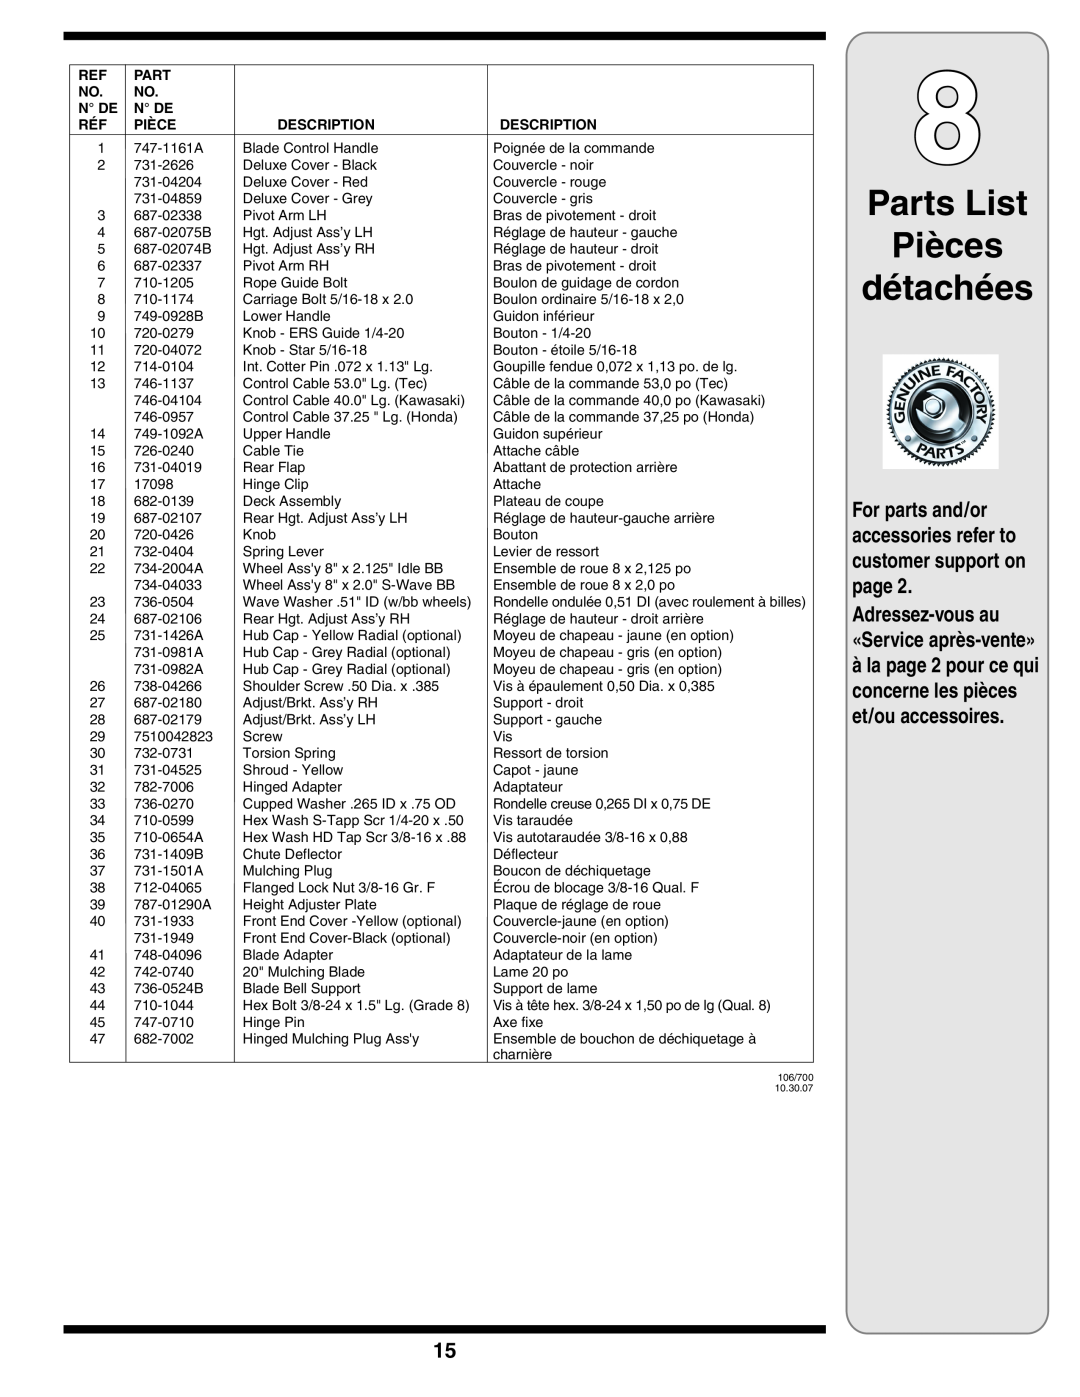 Bolens 100 warranty Parts List Pièces détachées, Adressez-vousau «Service après-vente», N De, Description 